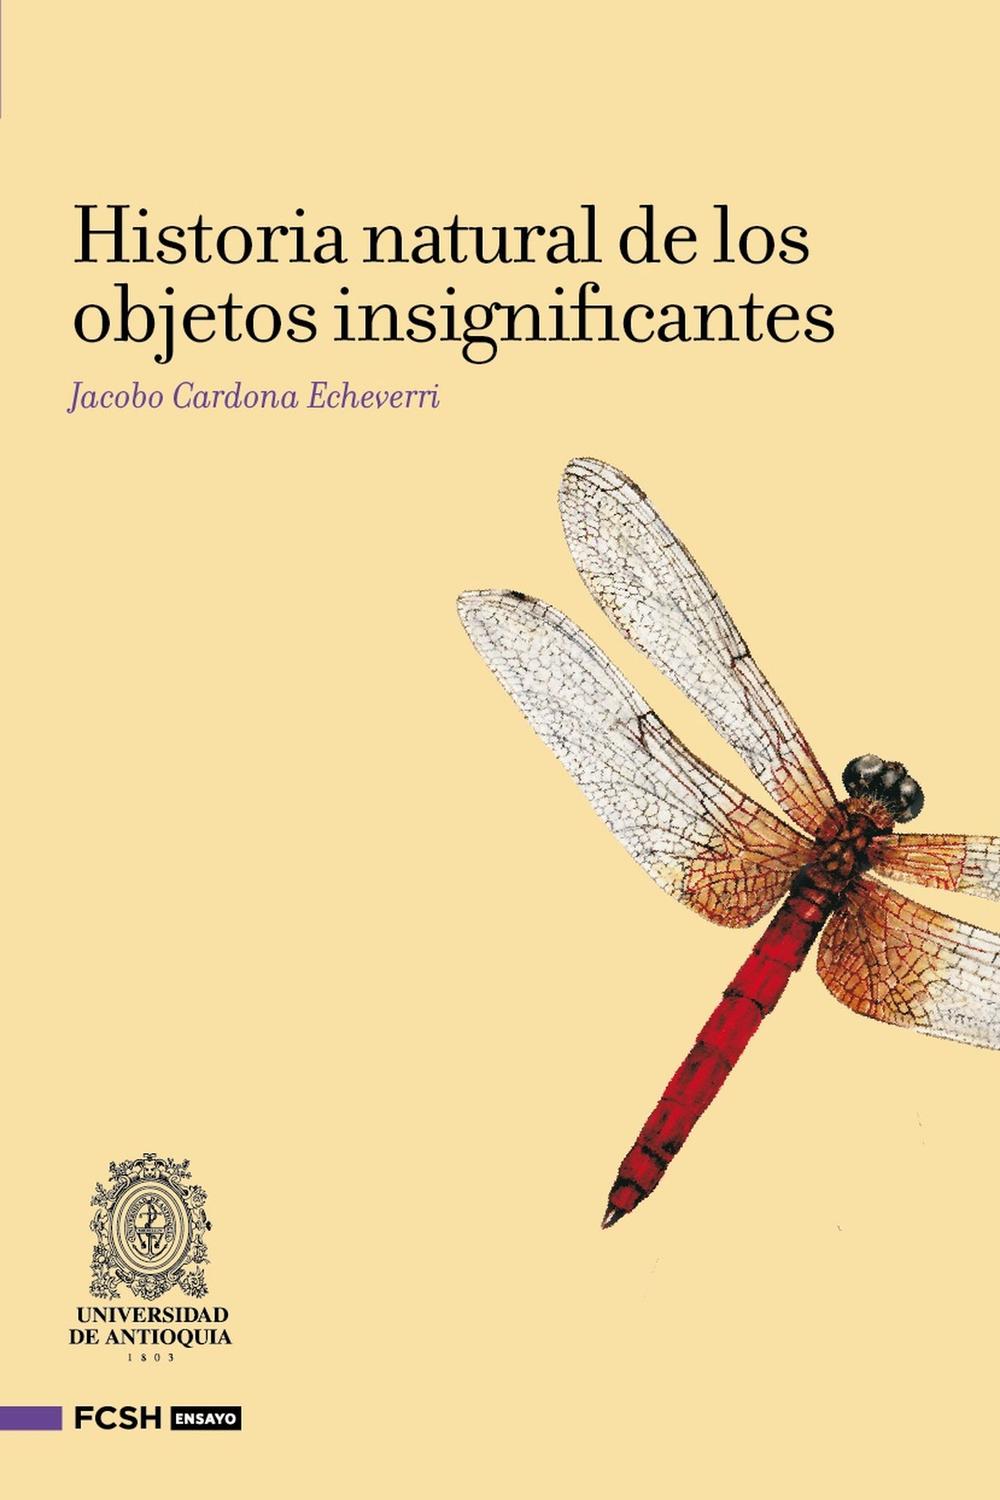 Historia natural de los objetos insignificantes - Jacobo Cardona Echeverri